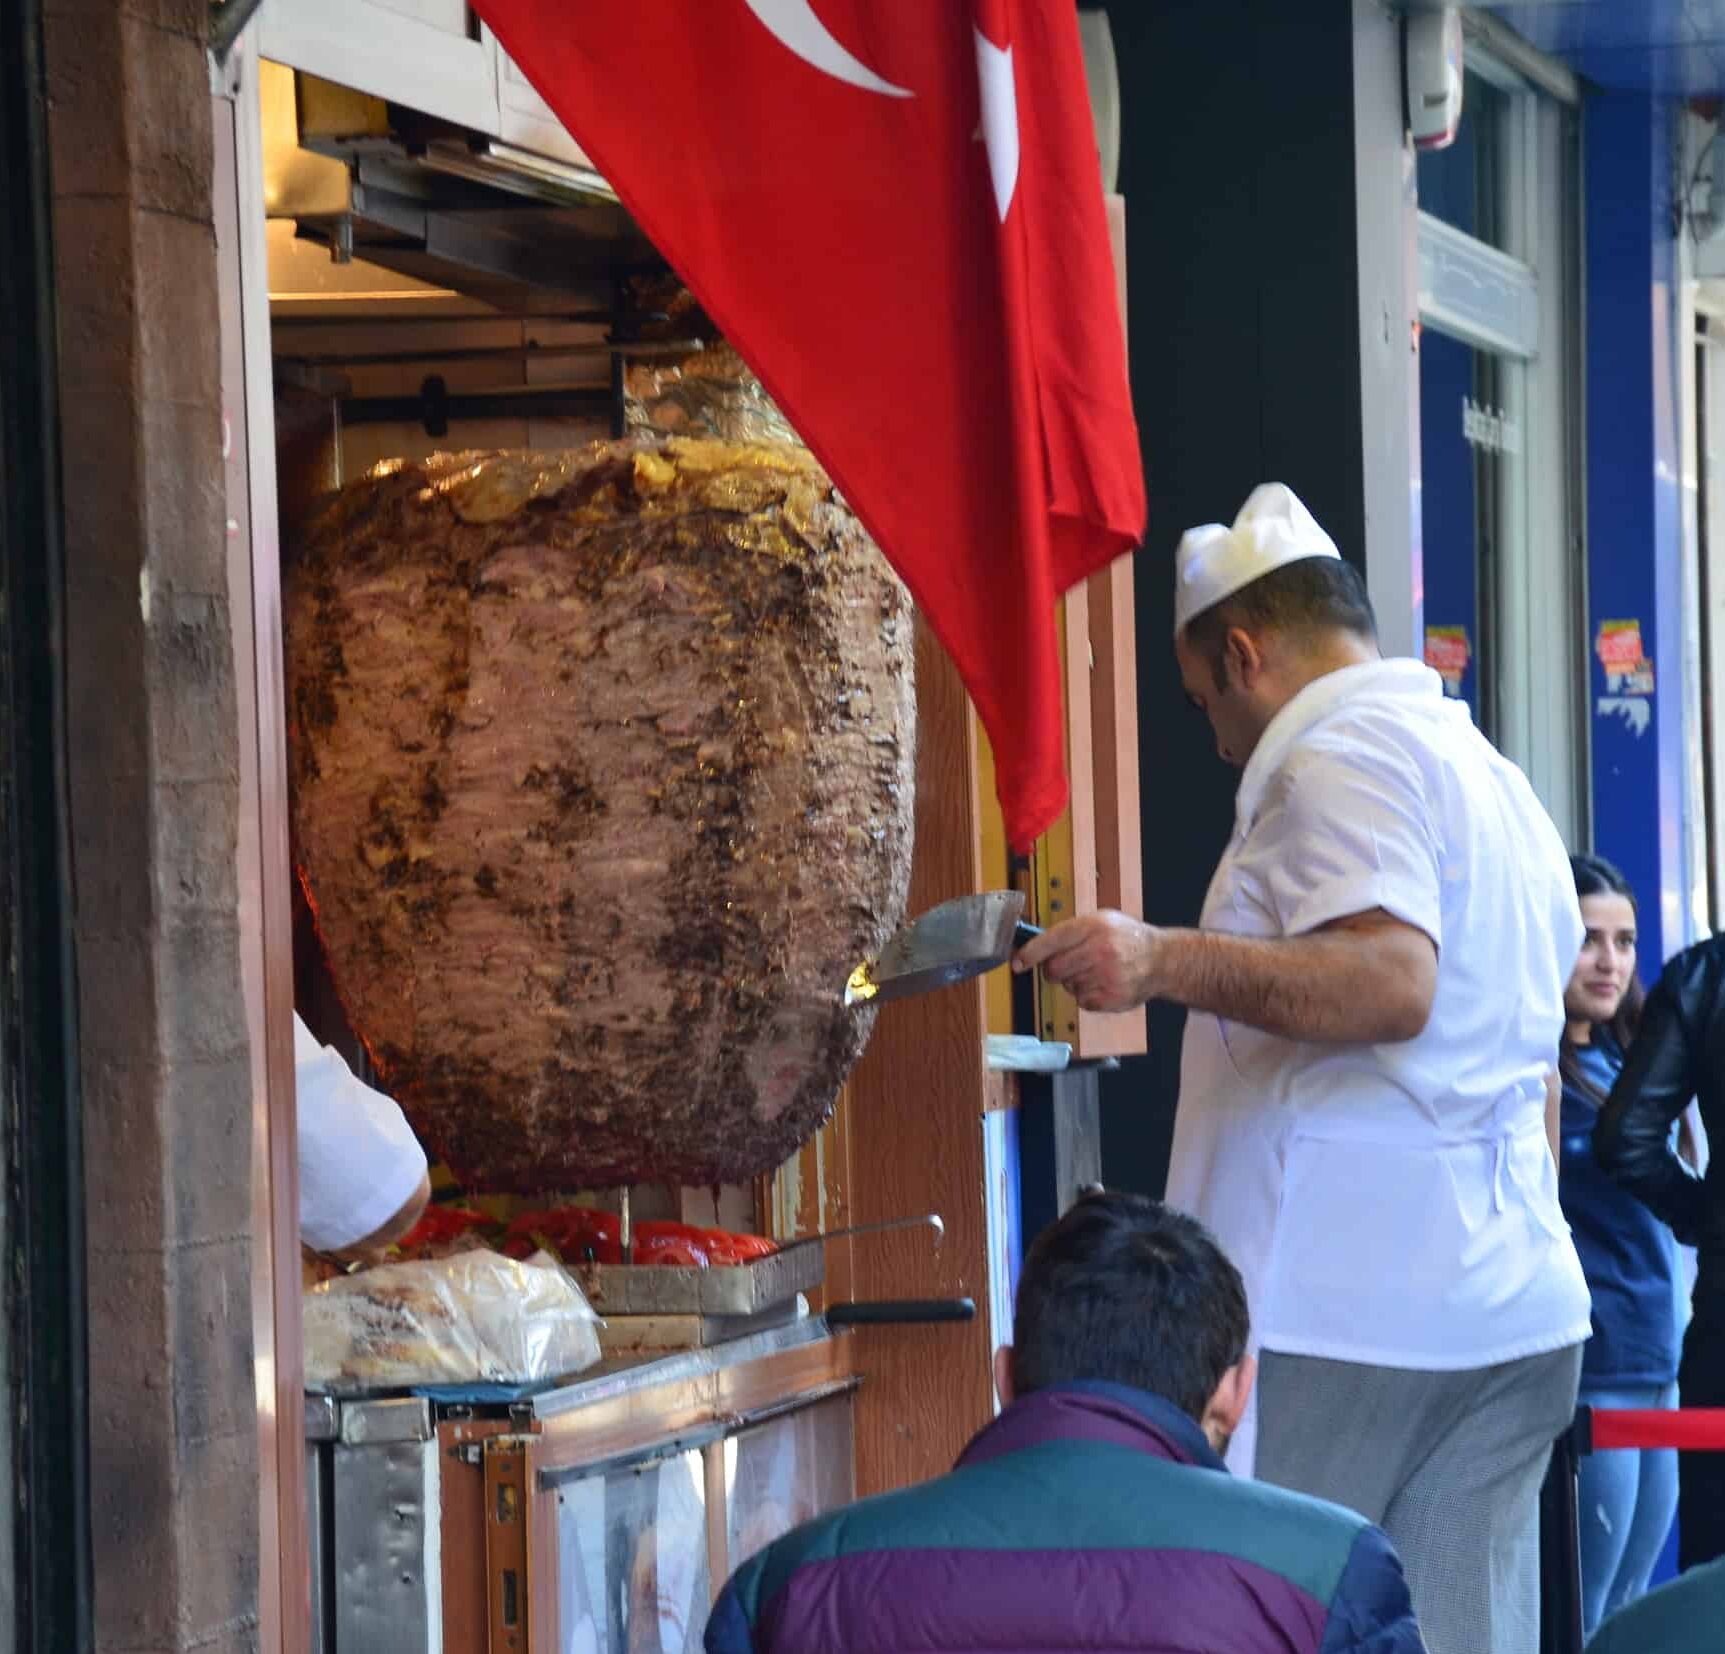 Döner kebab in Çarşı, Beşiktaş, Istanbul, Turkey